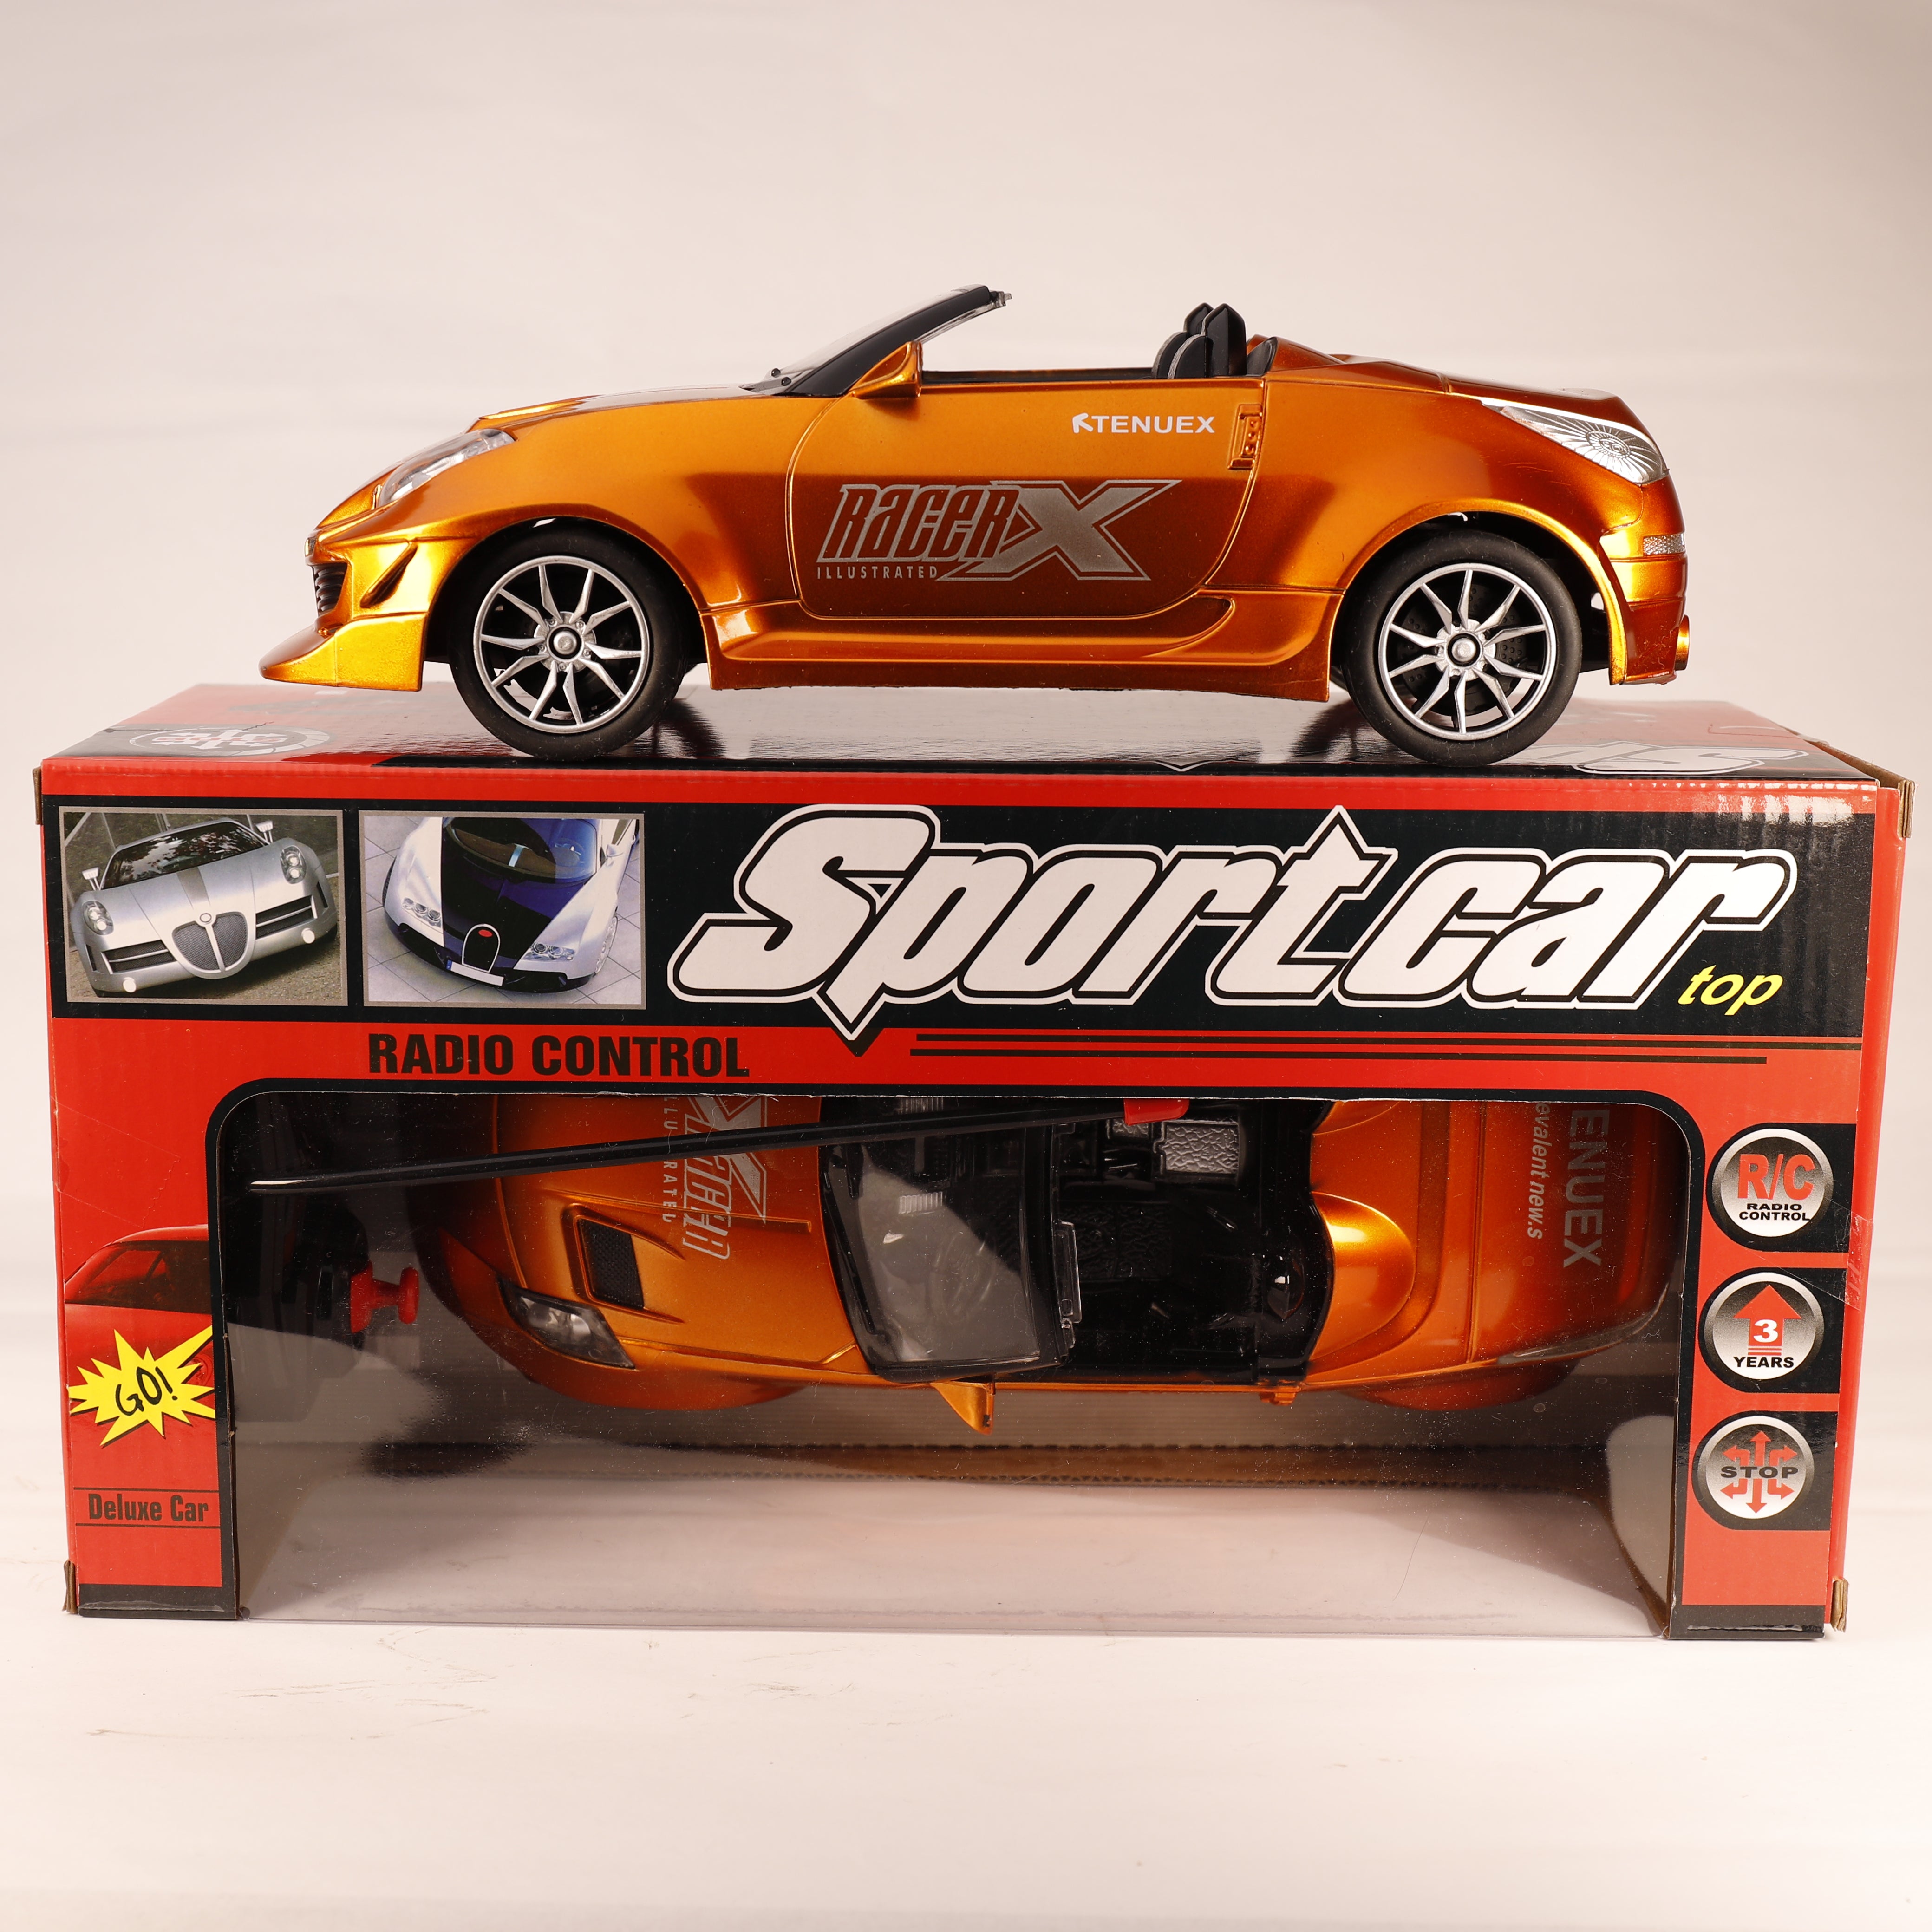 Cabrio Sport Car, TOP Auto mit Kontrolle, Spielzeug mit Fernbedienung, LED Licht